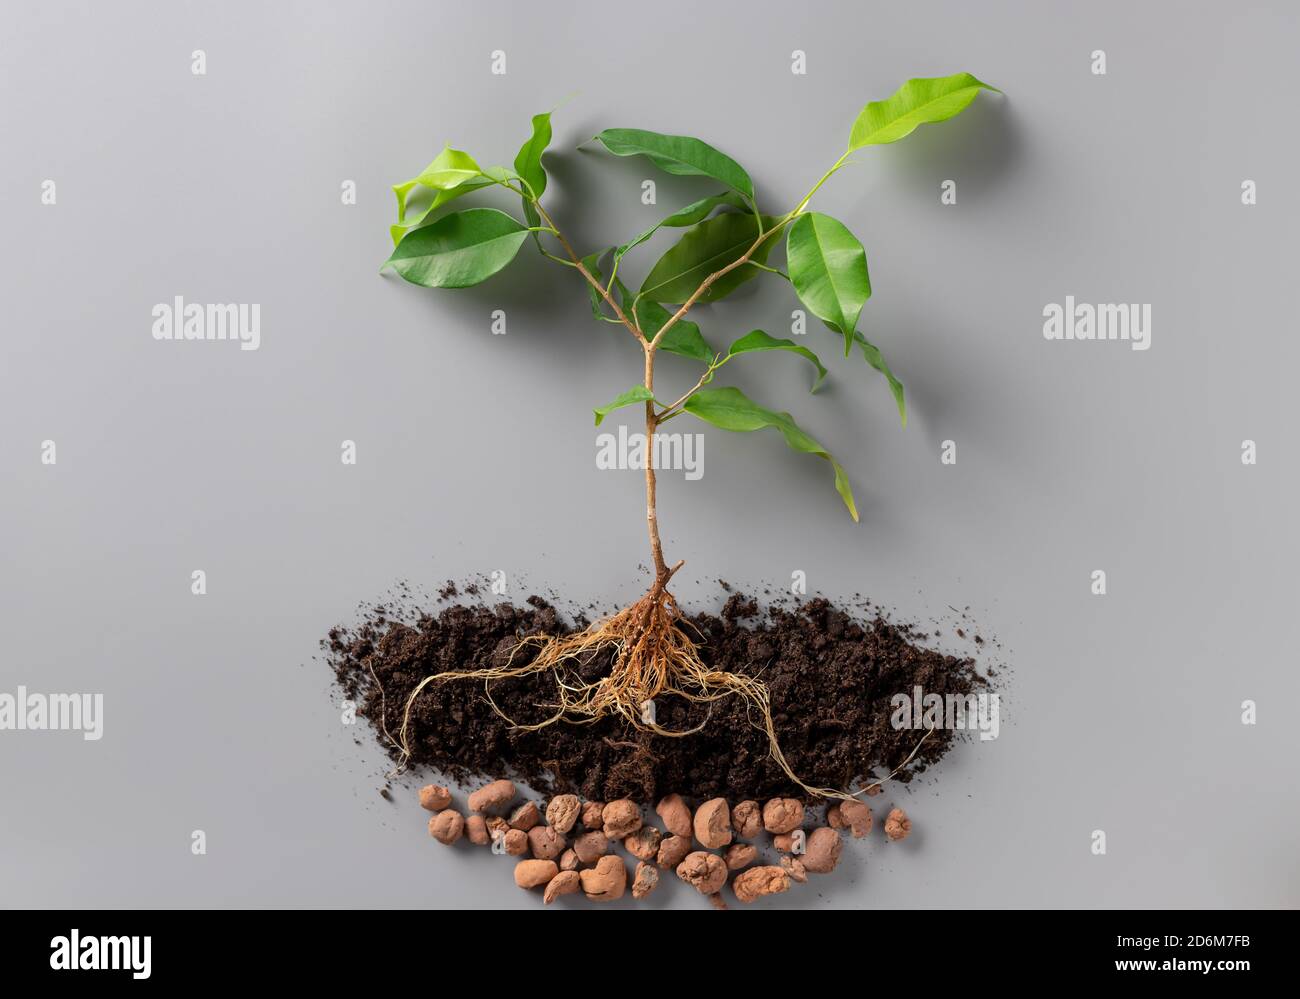 Junge grüne Pflanze mit Erde und Drainage auf grauem Hintergrund. Stockfoto